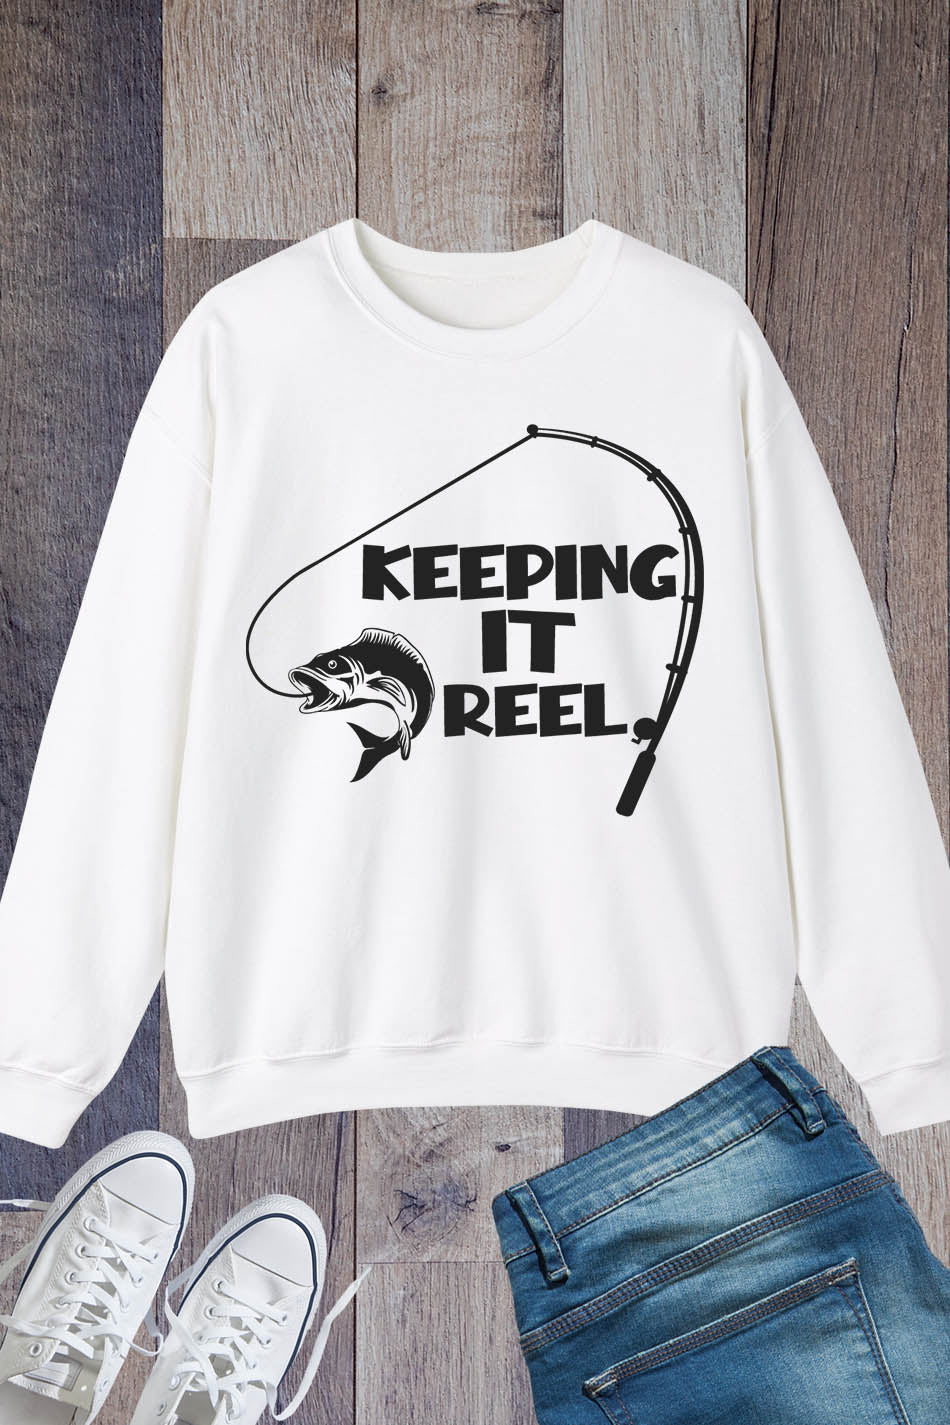 Keeping It Reel Funny Fishing Sweatshirts